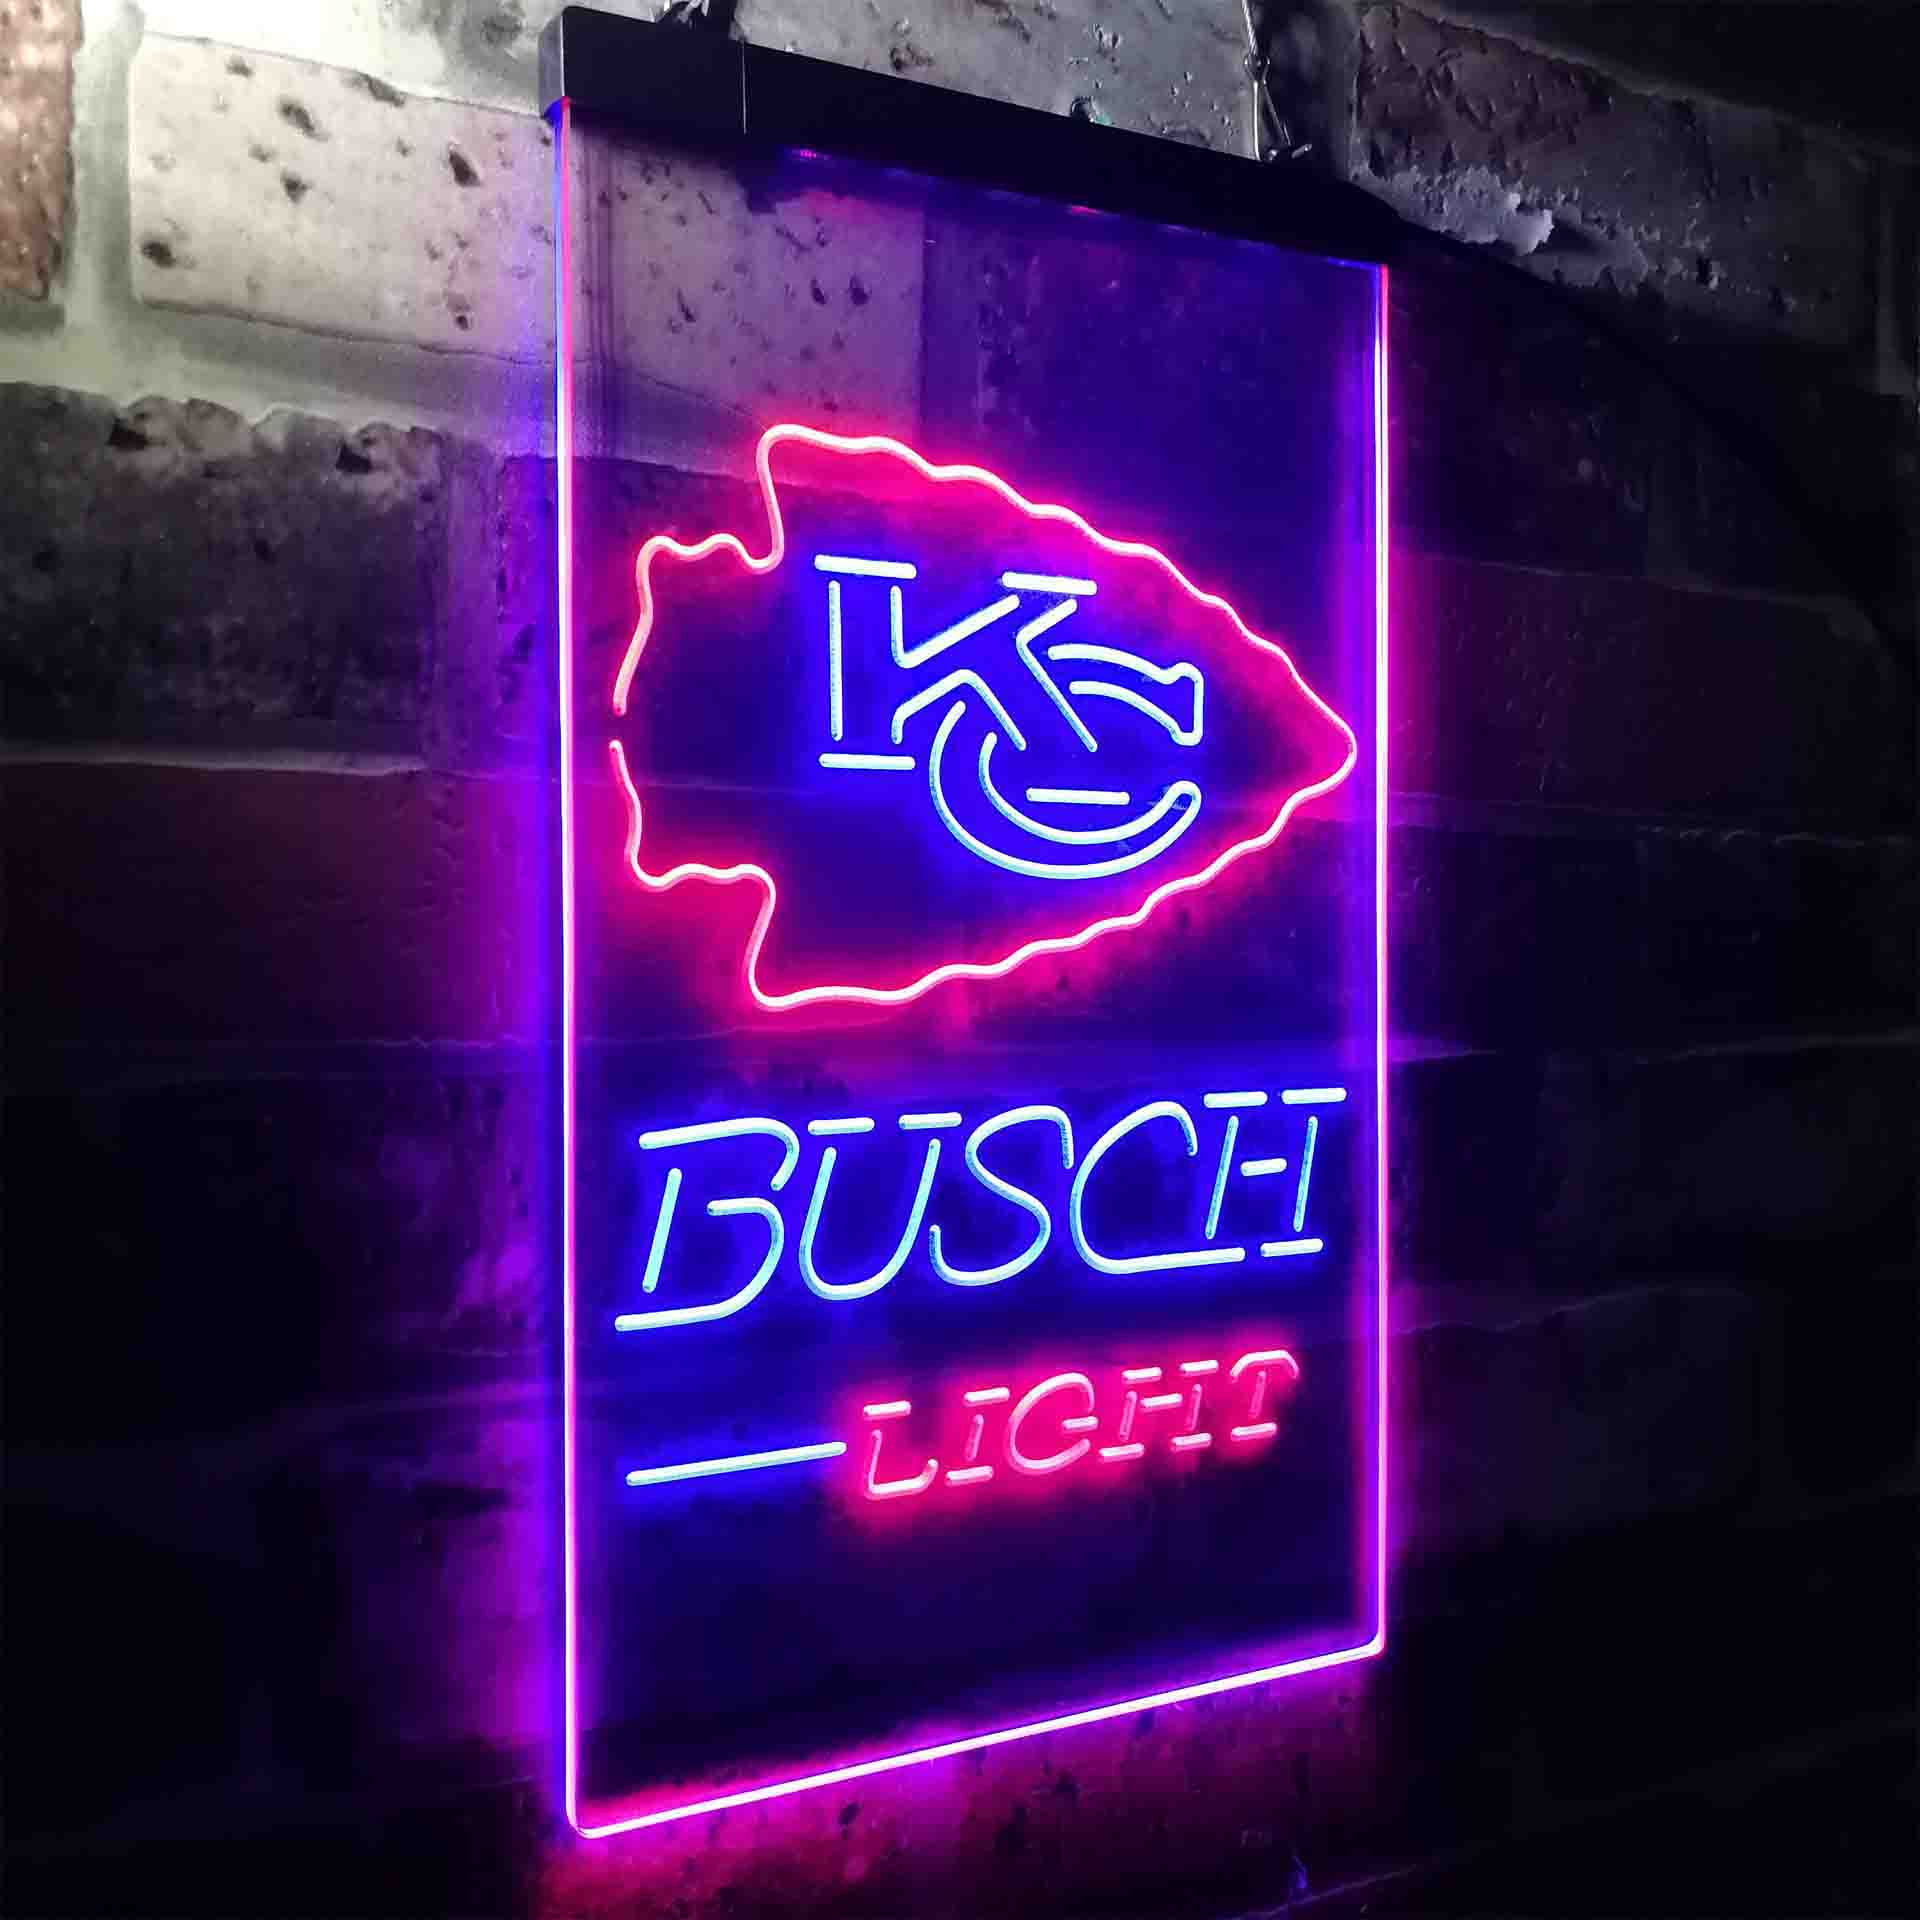 Kansas City Chief Busch Light LED Neon Sign